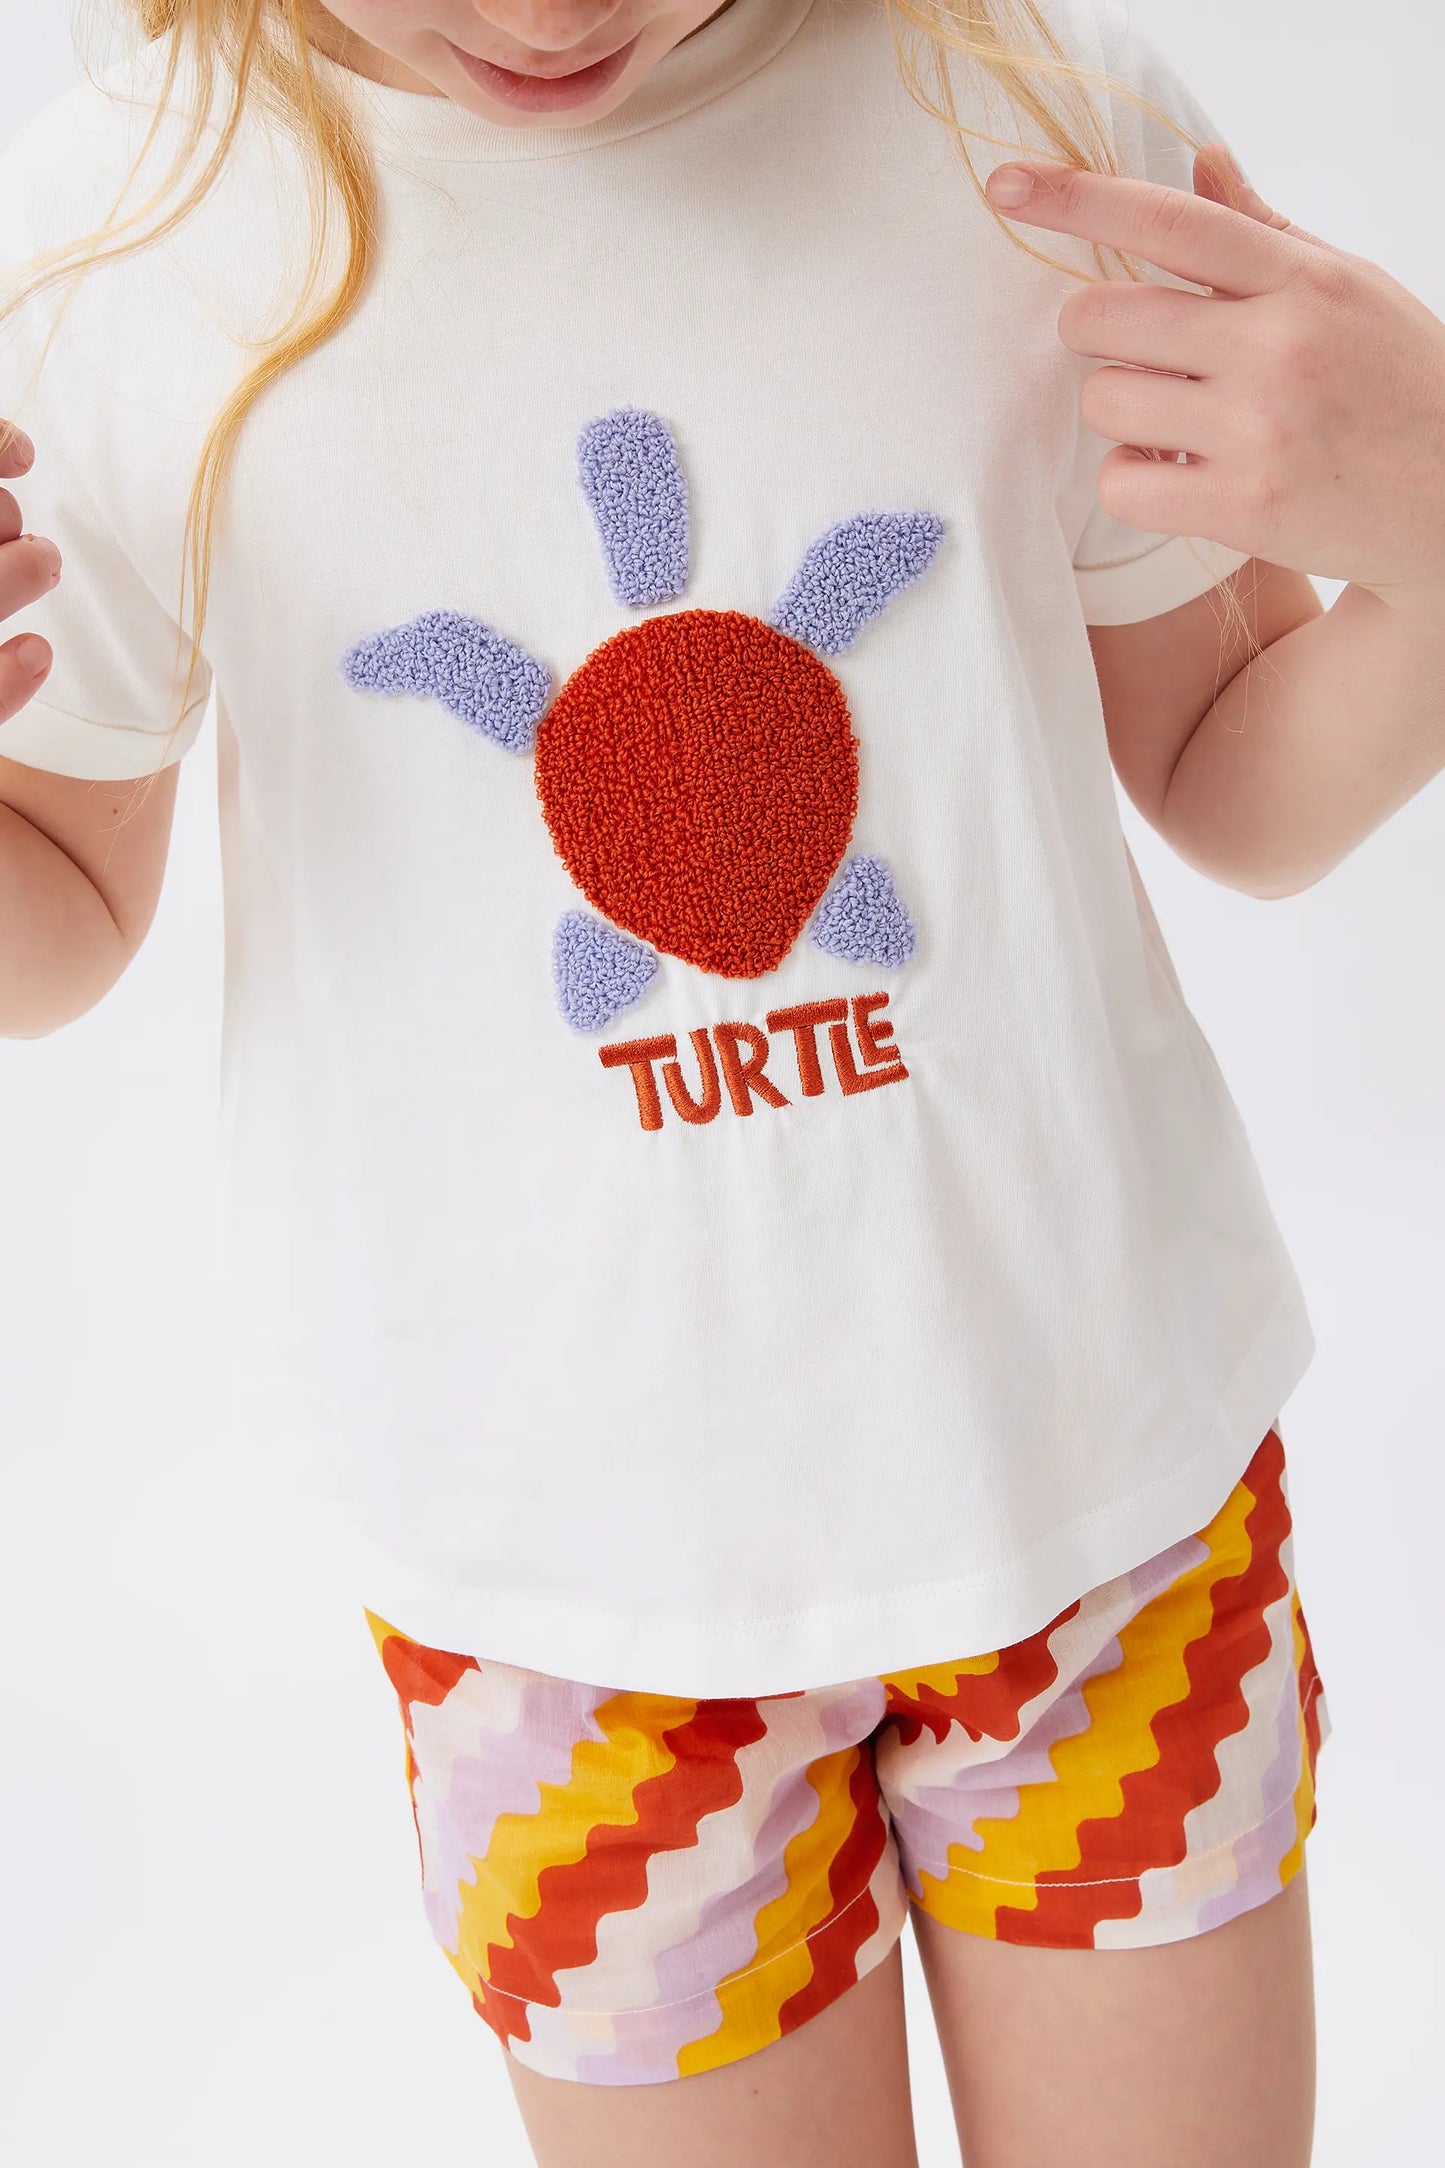 Camiseta unisex print tortuga blanca